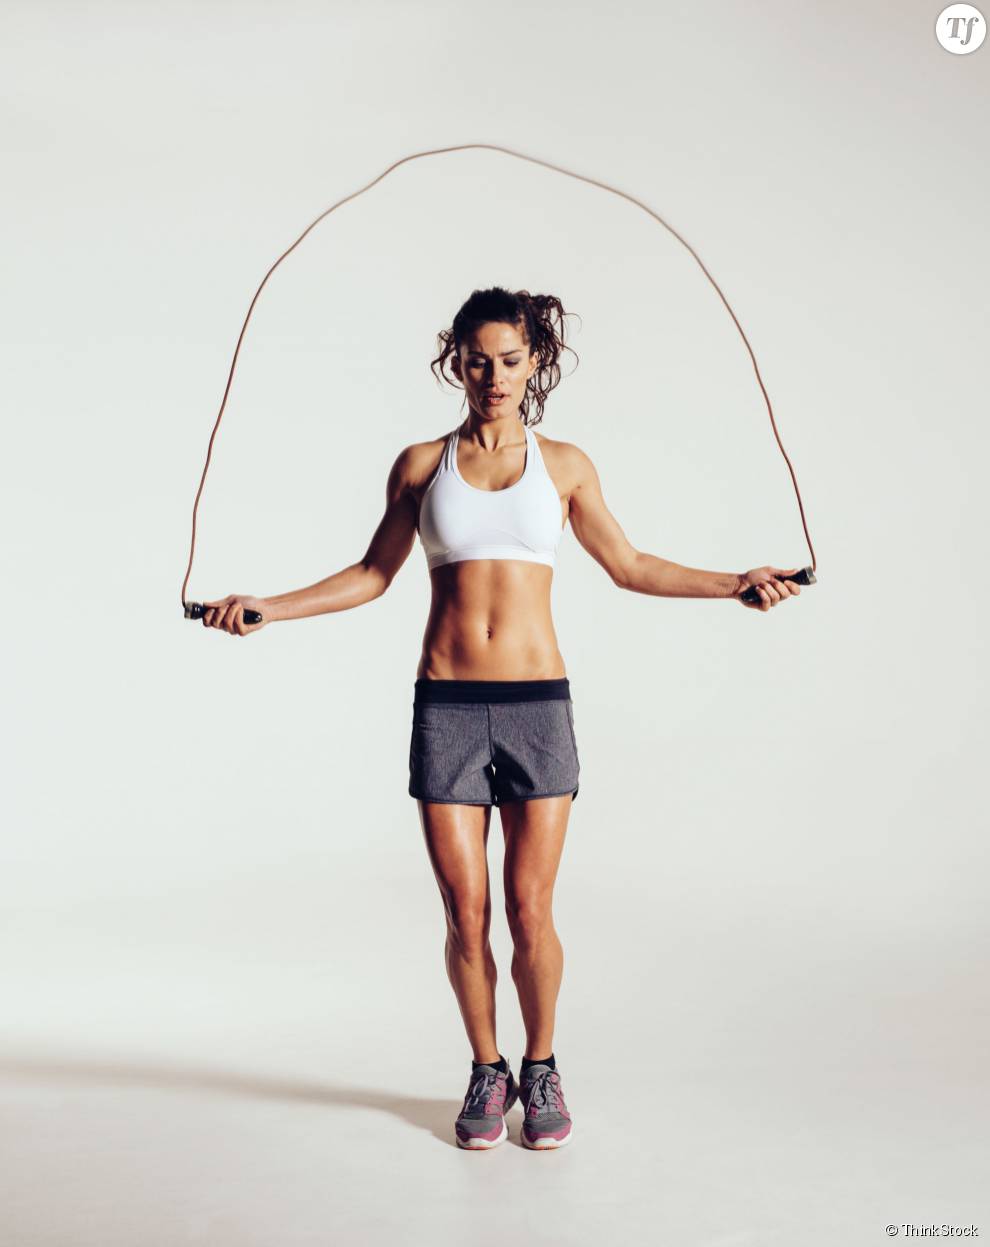 4 exercices de corde à sauter pour maigrir #Sport #fitness #cardio #musculation #blogTogo